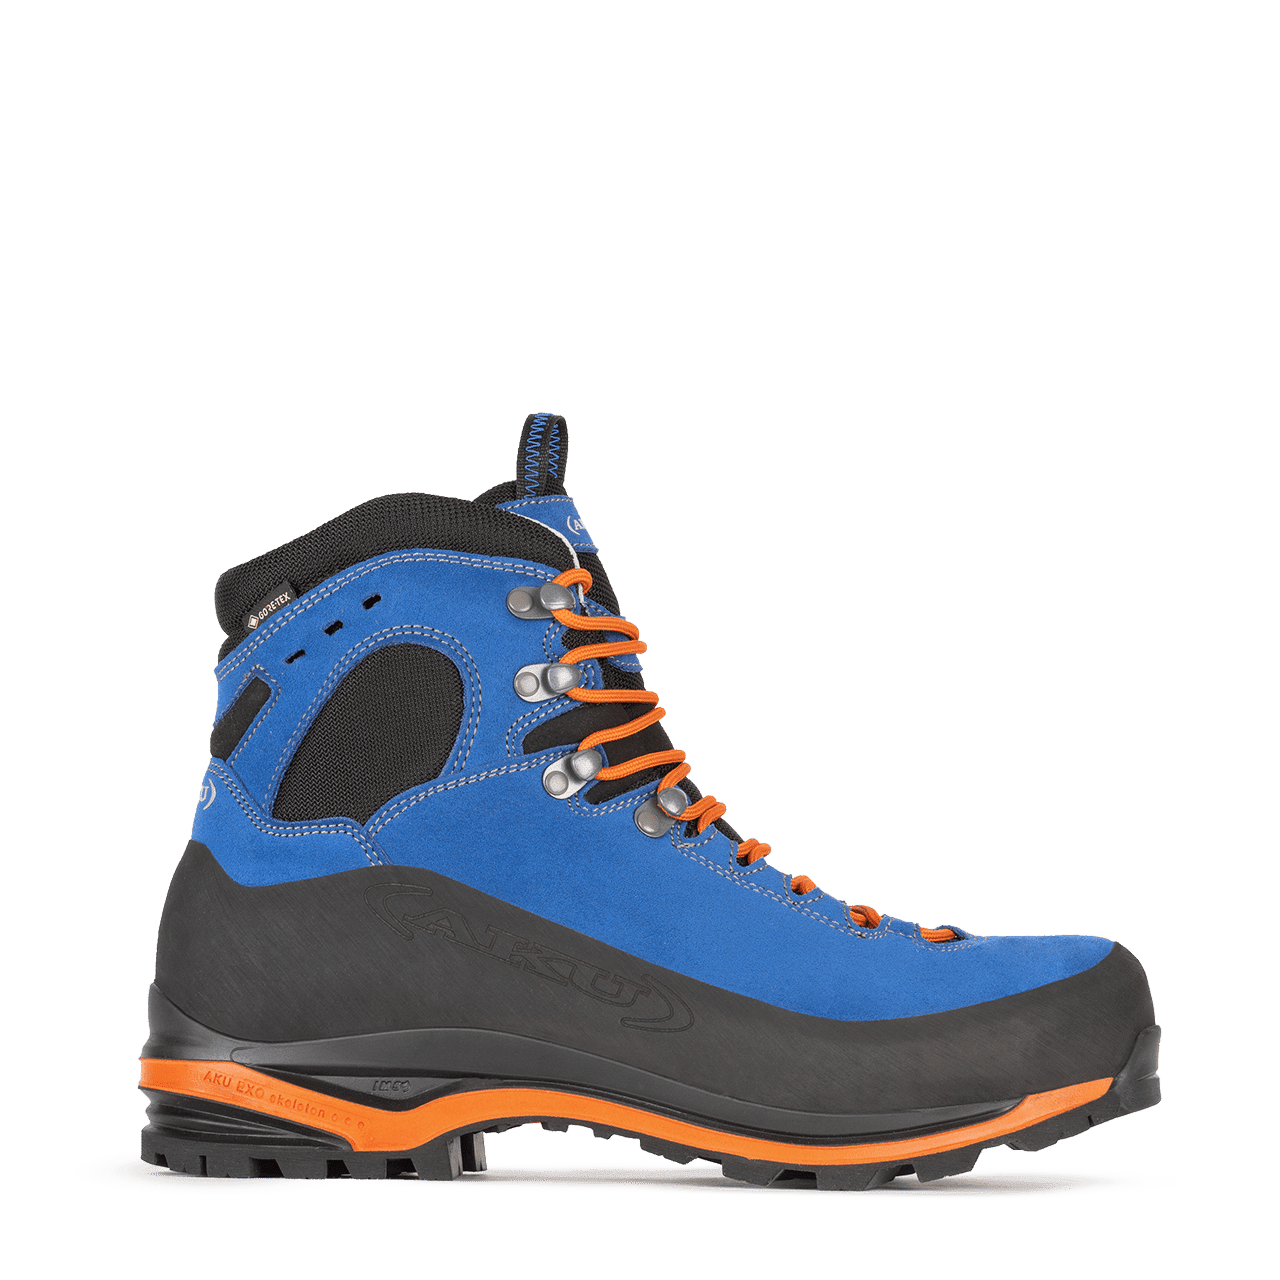 Aku Superalp V-Light GTX - Hiking boots - Men's